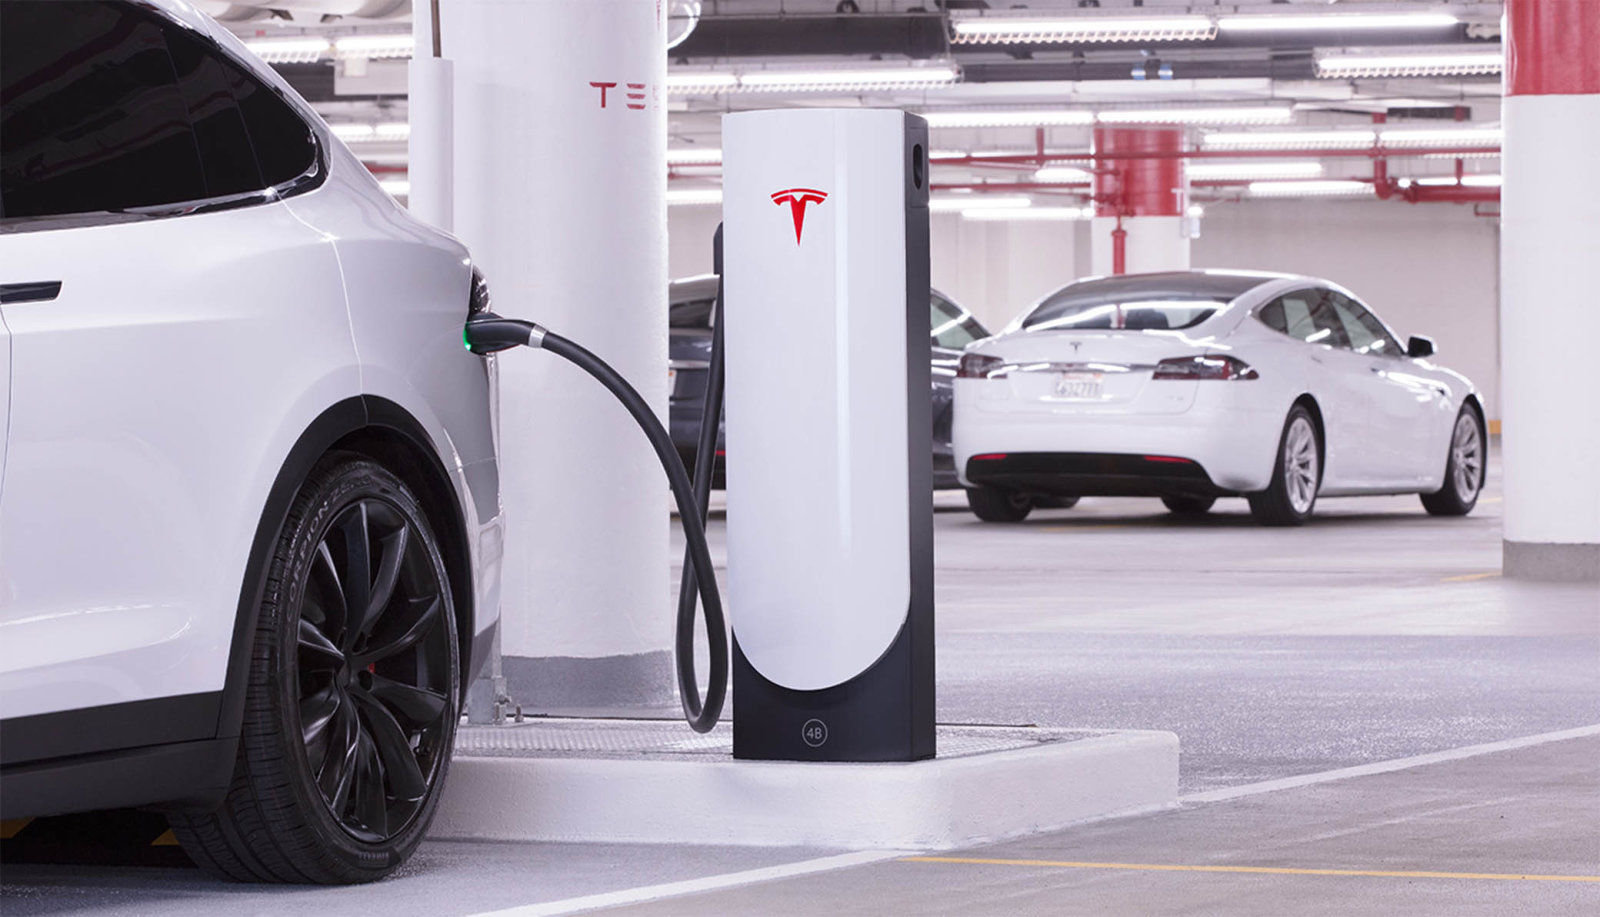 Tesla เตรียมเข้าซื้อกิจการ Maxwell เพื่อพัฒนา “แบตเตอรีรถยนต์ไฟฟ้า” ให้ใช้ได้นานยิ่งขึ้น